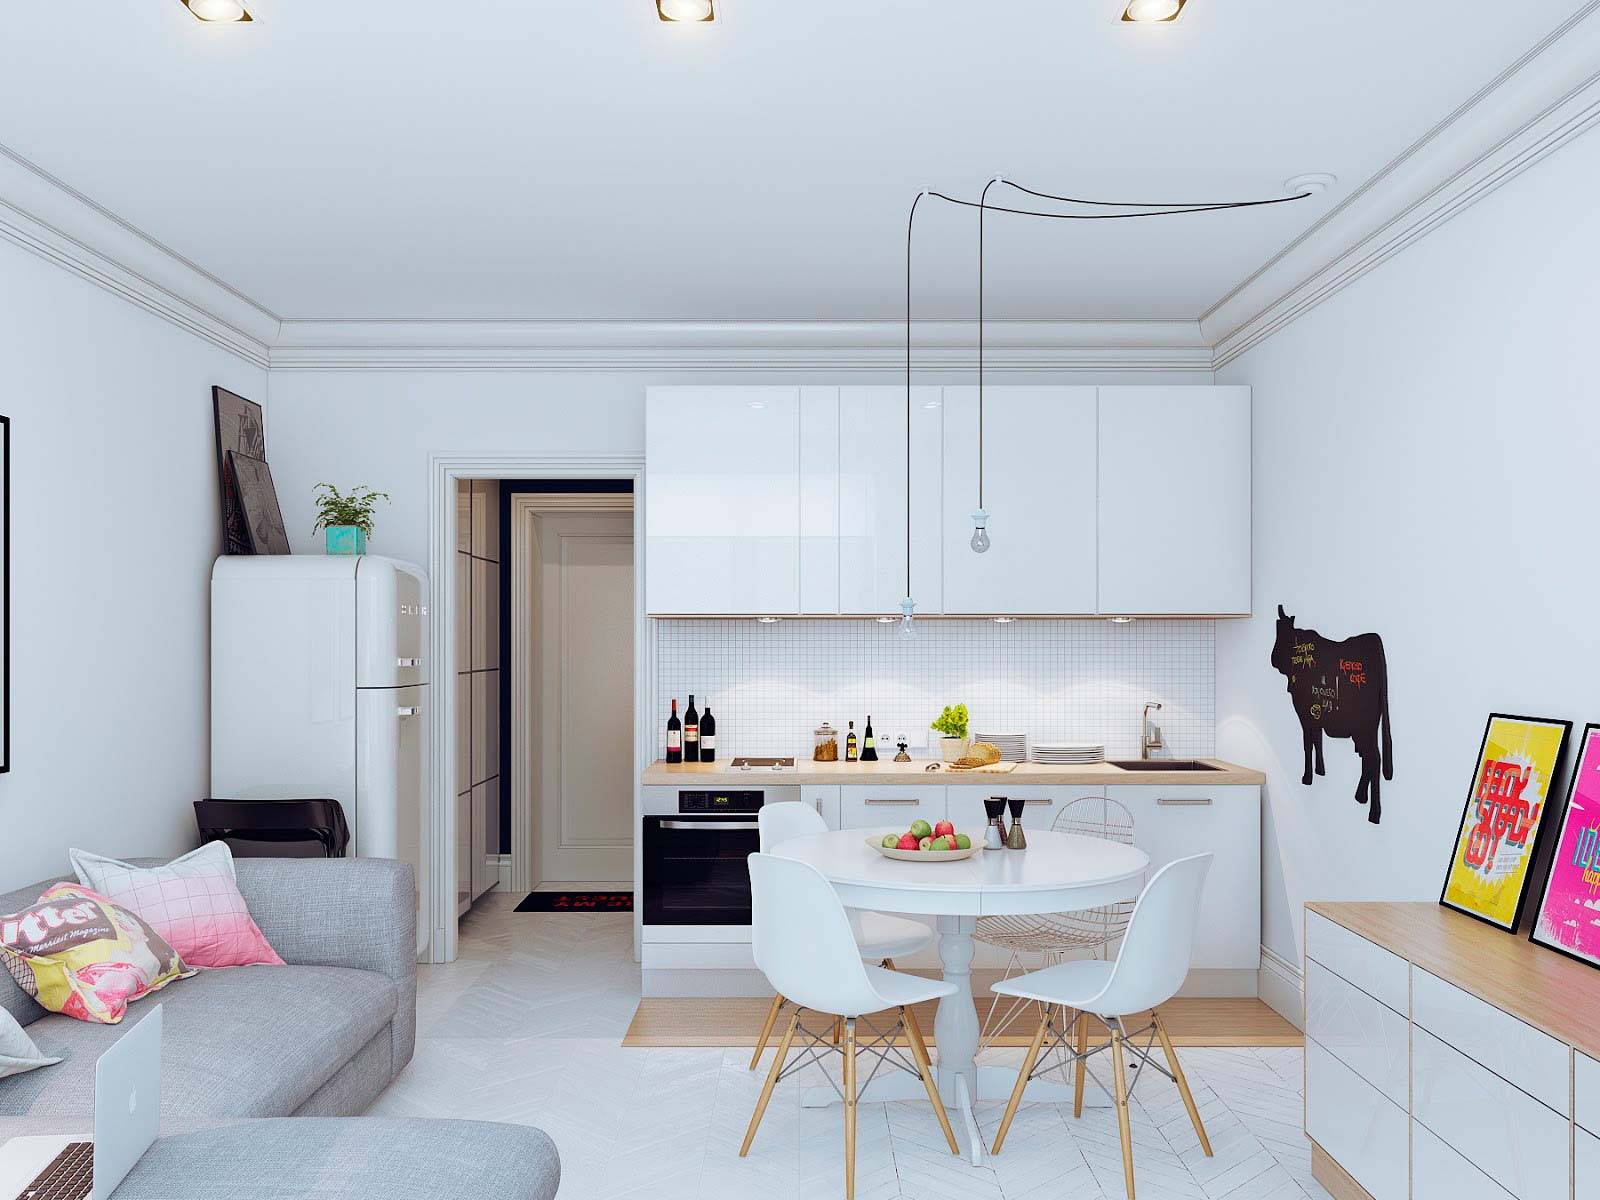 Кухня-гостиная площадью 14 кв. м: как создать стильный интерьер